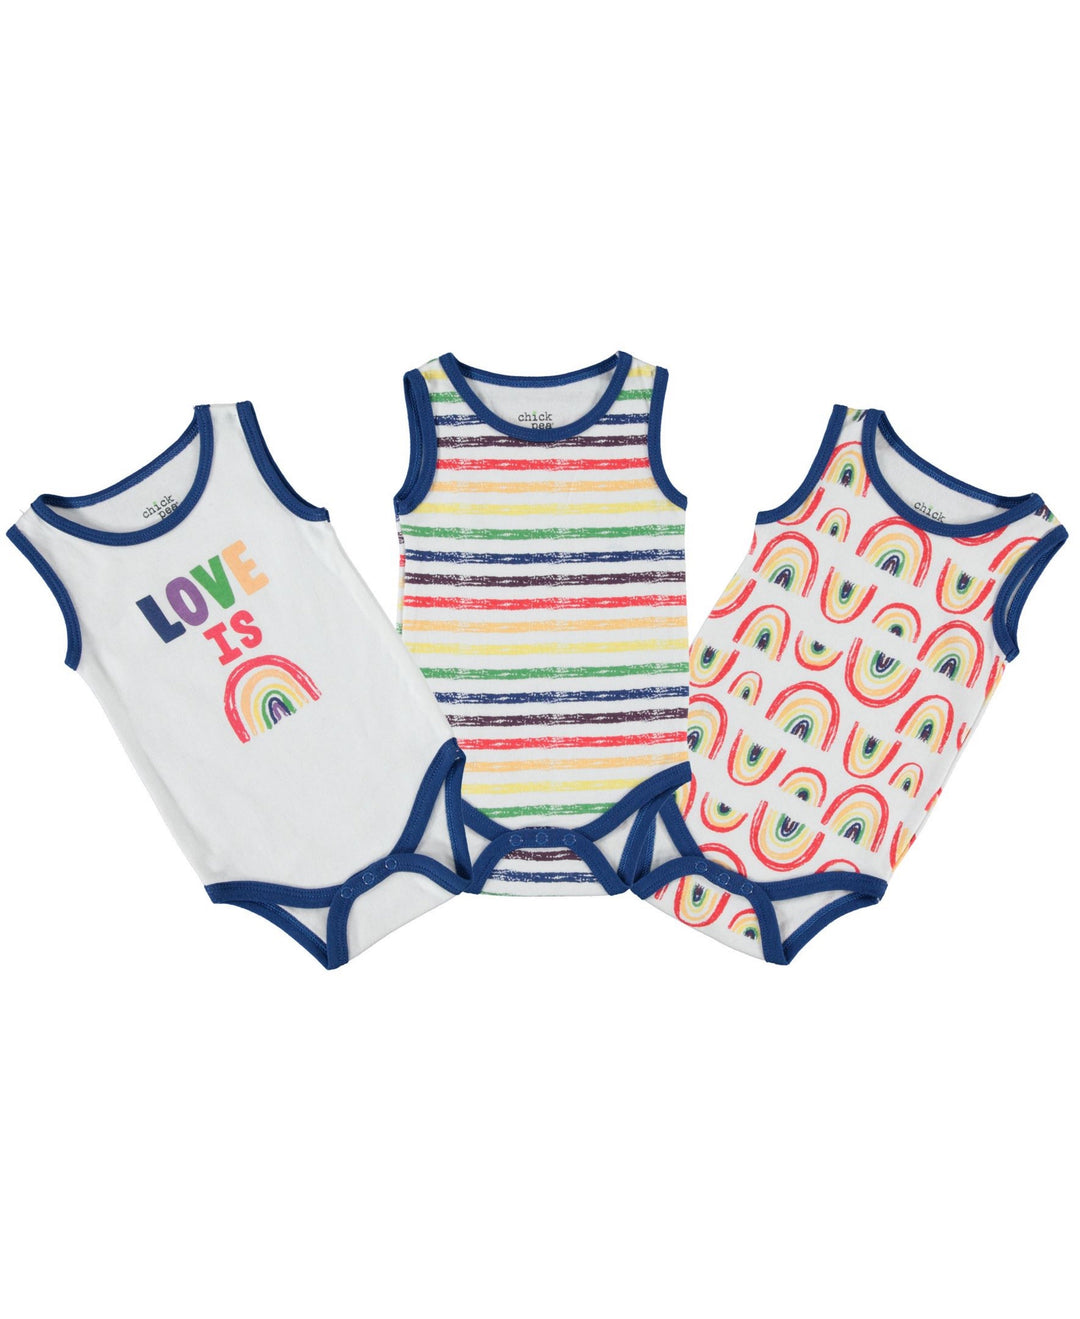 Onesie-Bodysuit-Baby-Girl-Boy-Newborn-Essentials-Clothes-Registry-Shower-Gift-Sleeveless-Image1